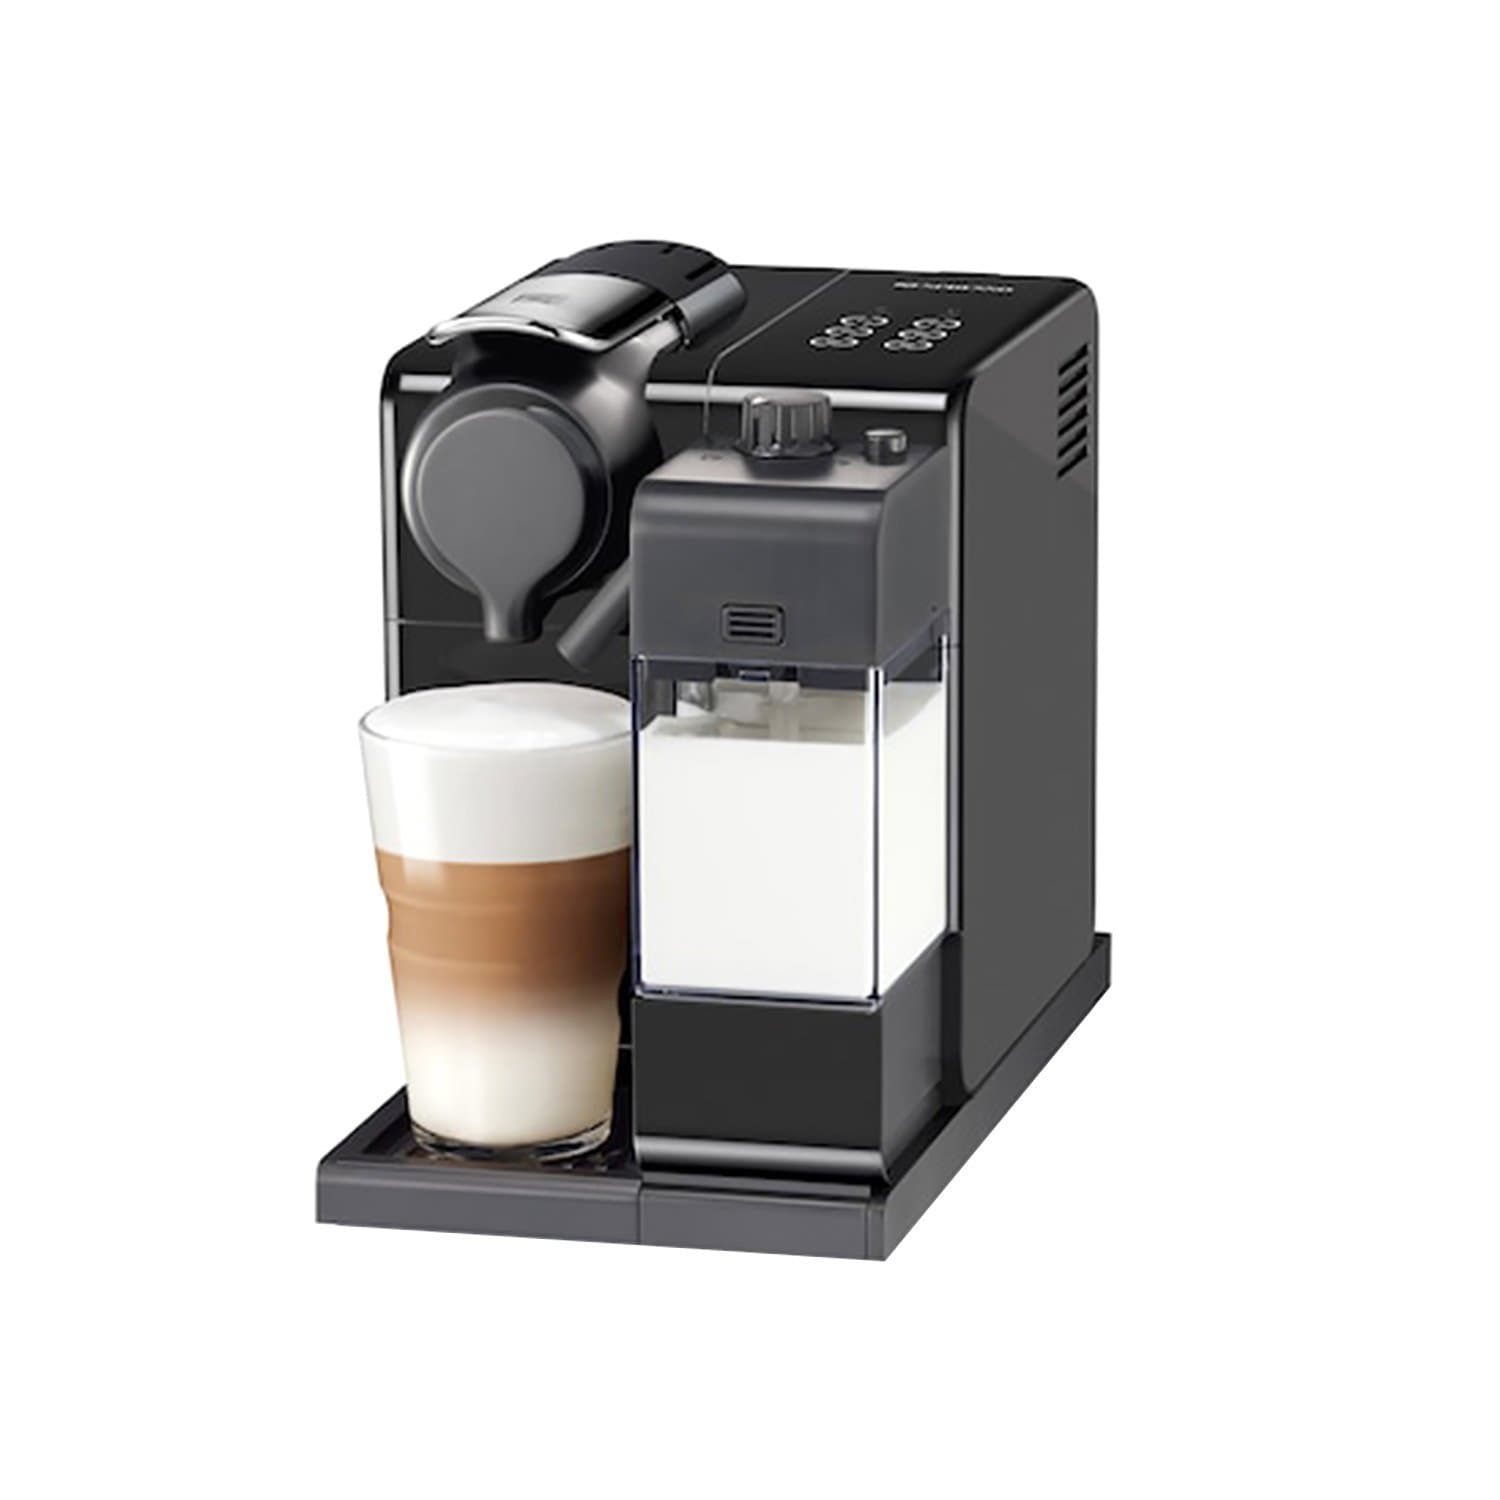 Nespresso Coffee Machine - Black - F521-ME-BK-NE - Jashanmal Home